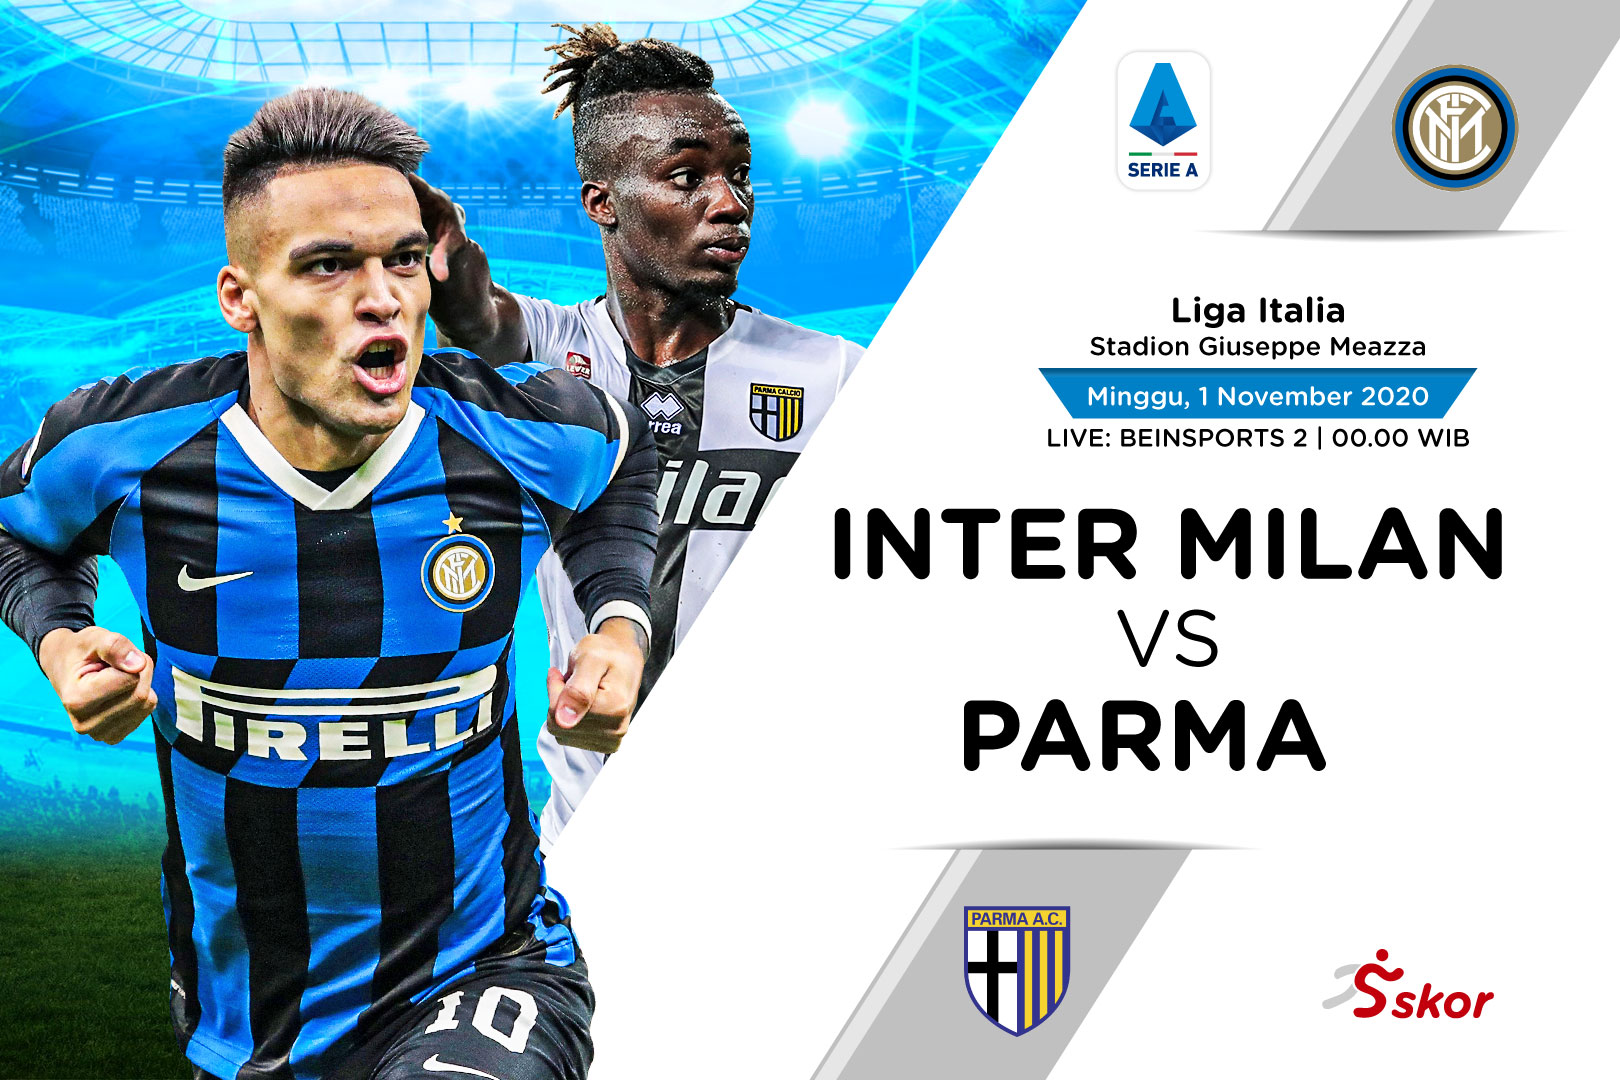 Prediksi Liga Italia: Inter Milan vs Parma